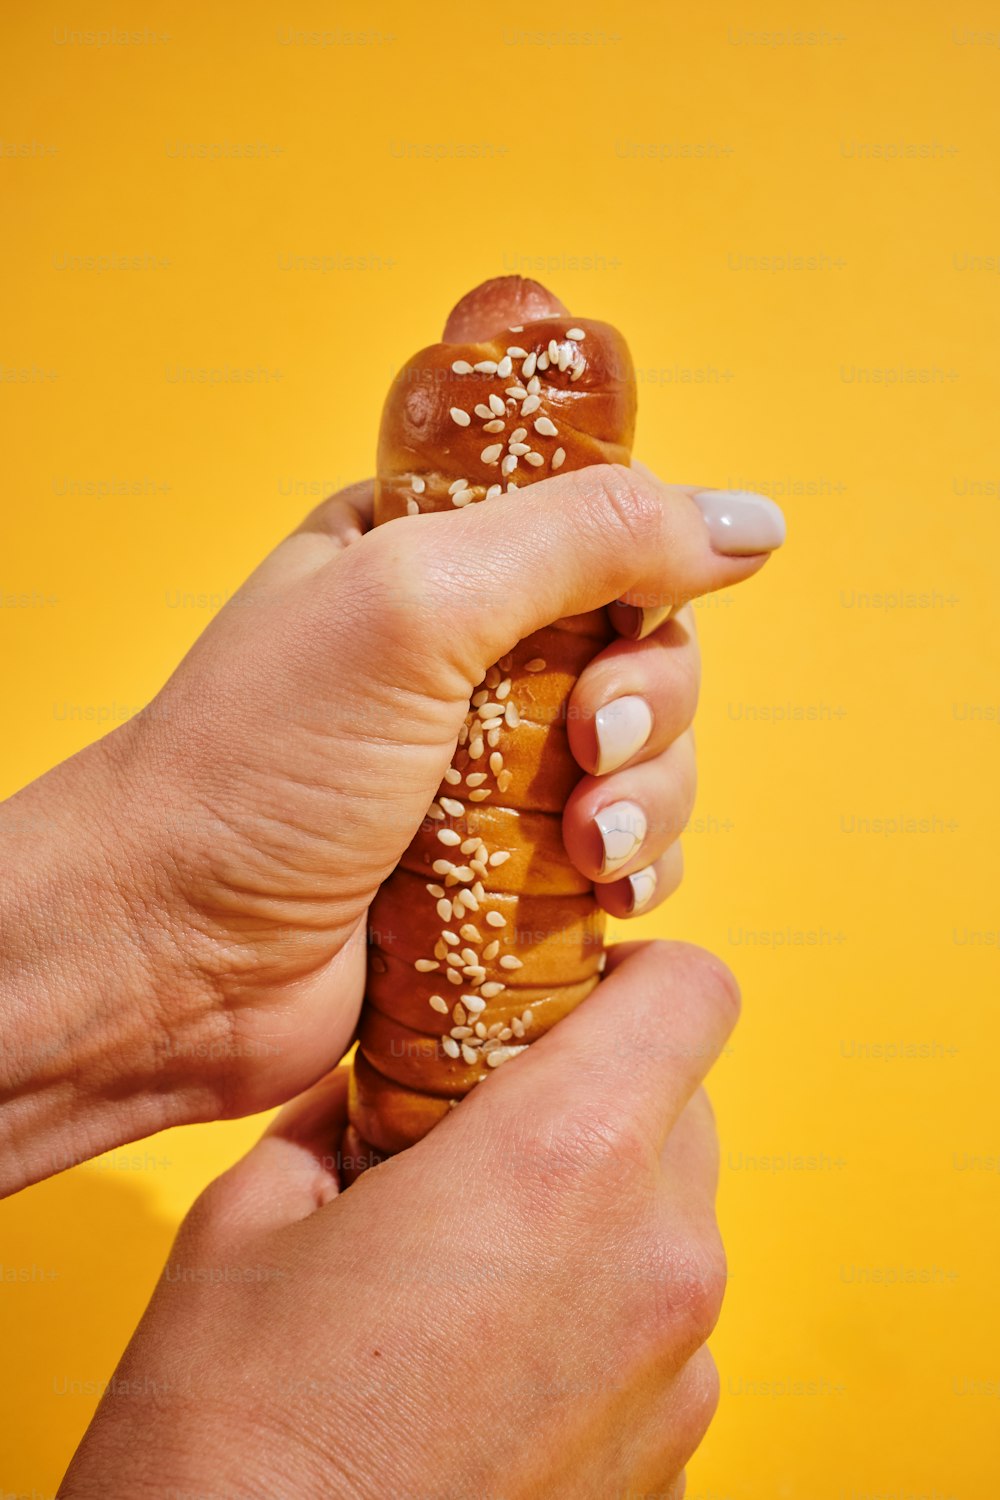 una persona che tiene in mano un pretzel